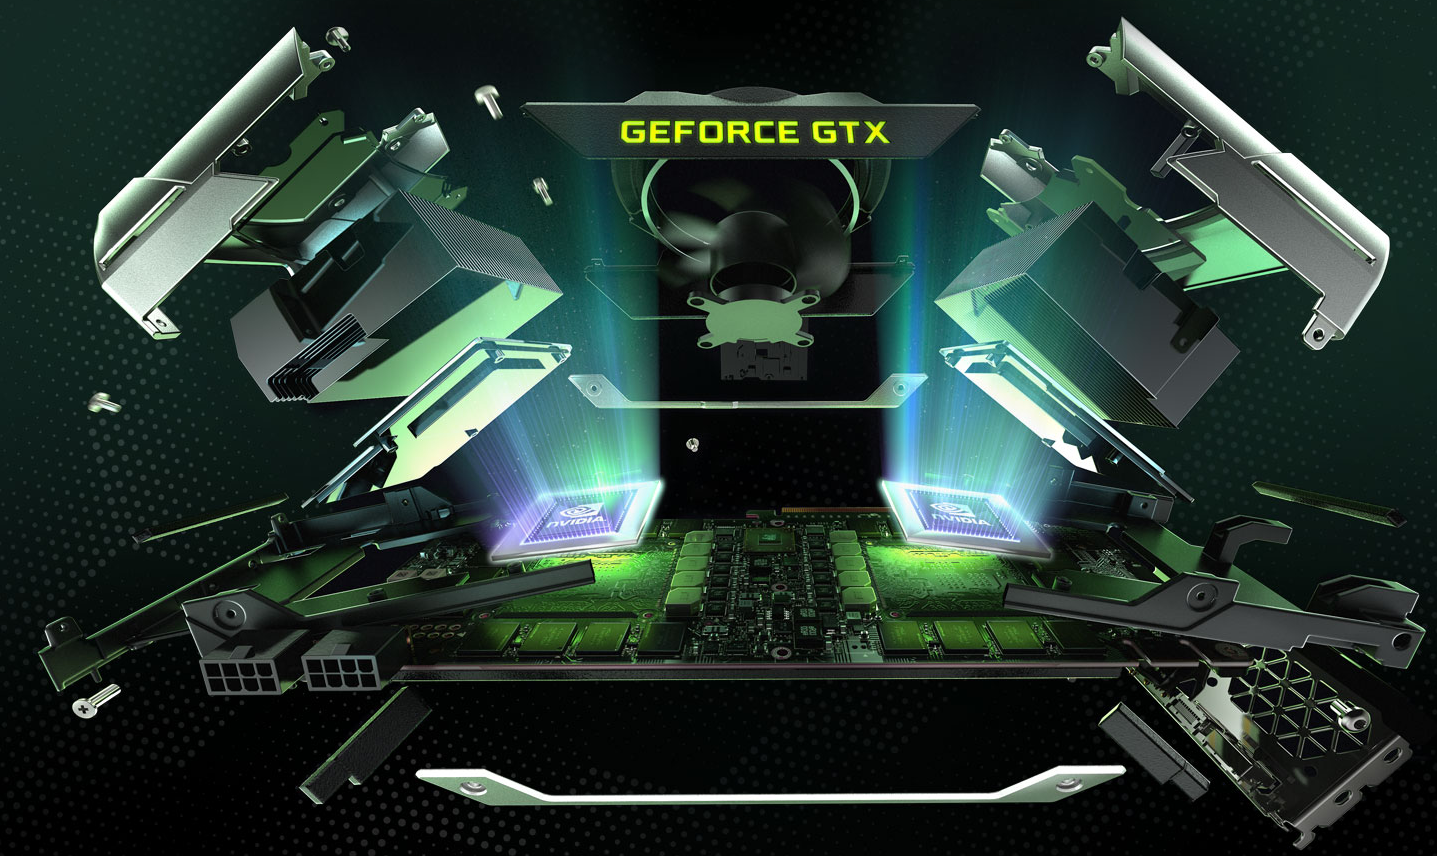 深度剖析NVIDIA GeForce 9400GT显卡虚拟显存技术及性能表现  第8张